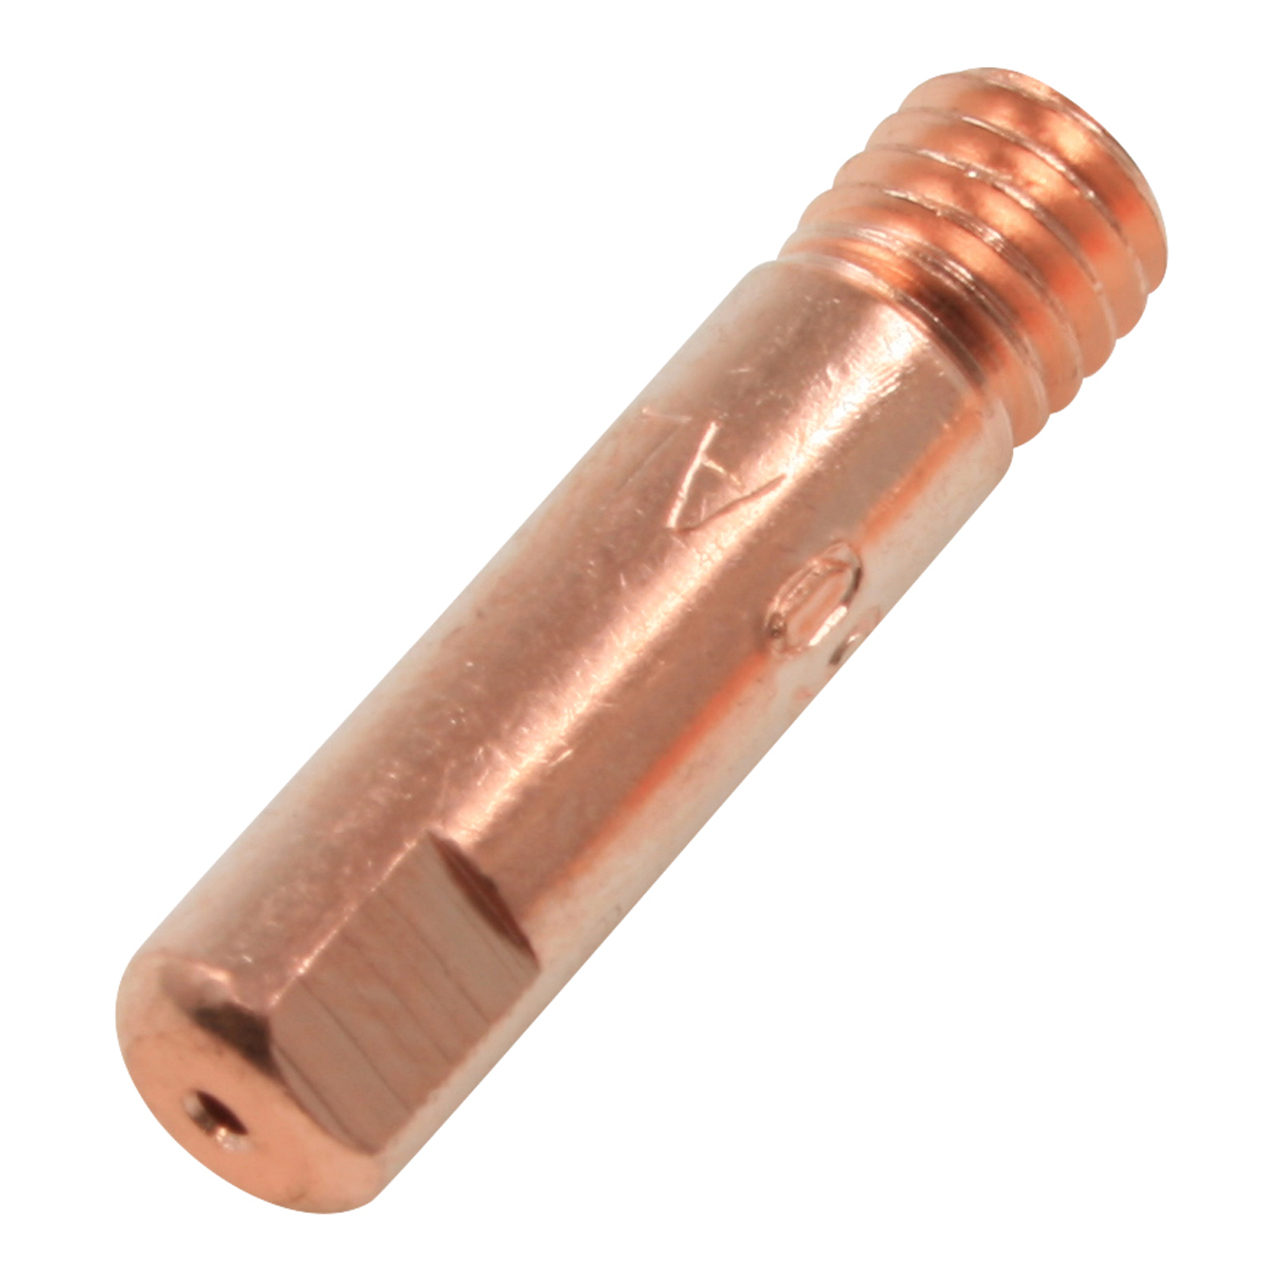 MAG Schweißgerät M6 x 25 mm 10 Stück 1,2 mm Stromdüsen Kontaktröhrchen für MIG 